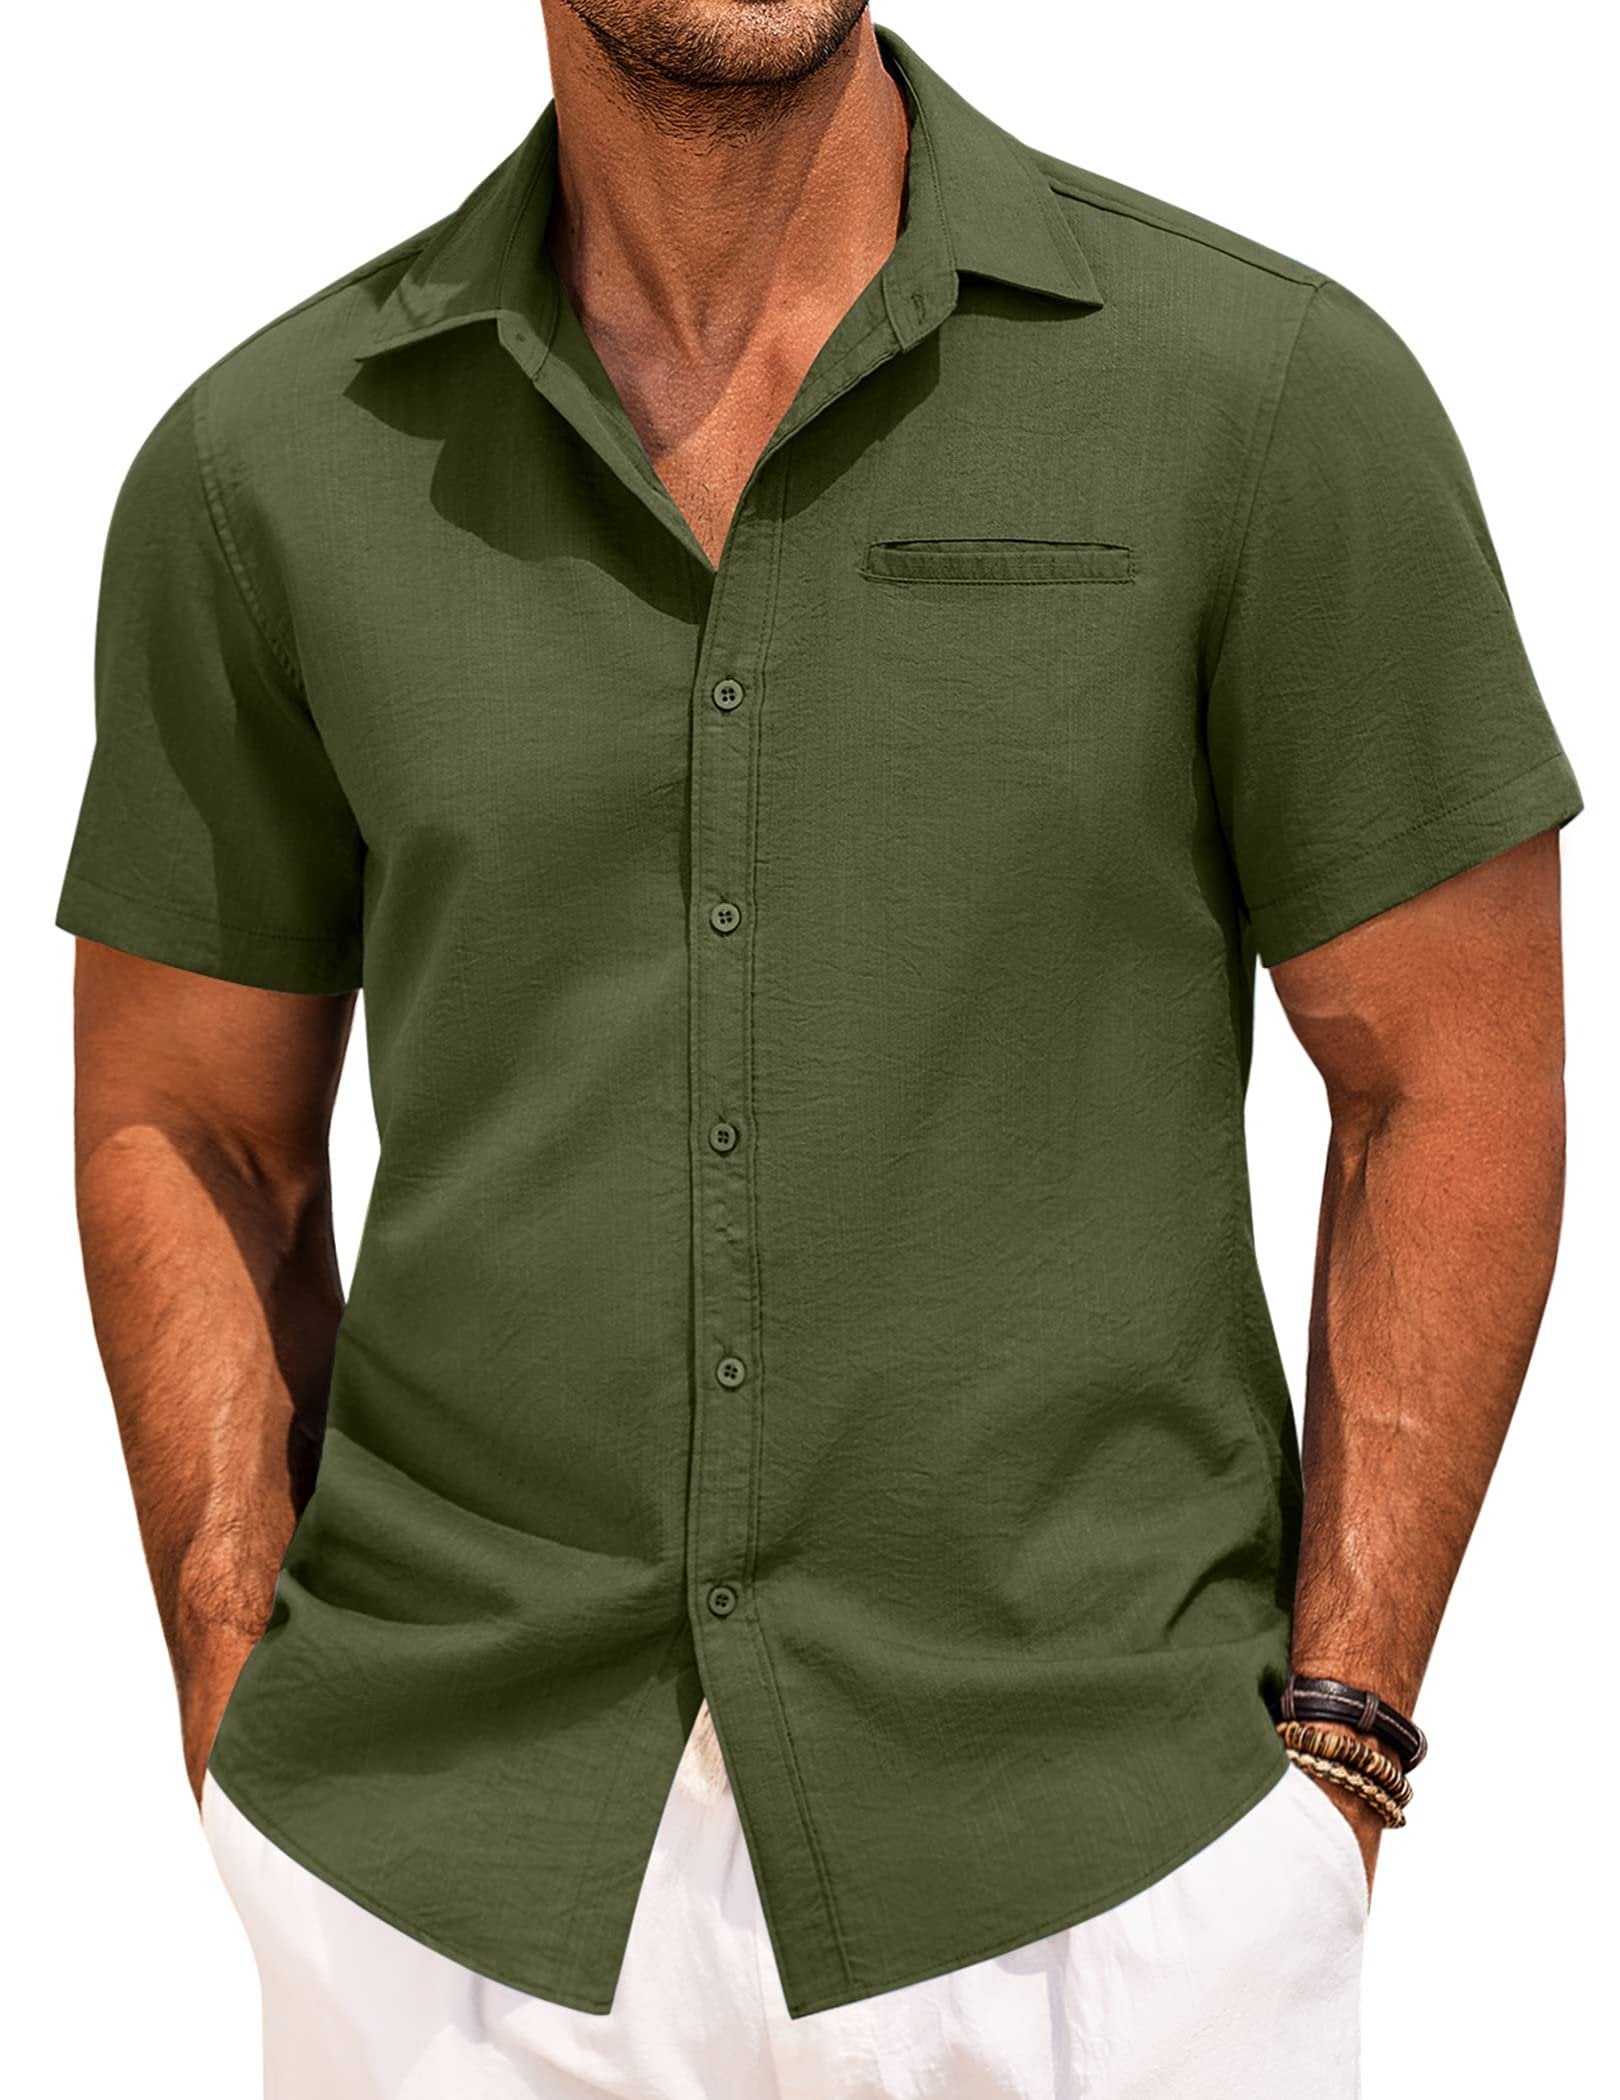 Men's Fake Pocket Linen Shirt Short Sleeve Button Up Shirt Summer Beach Hawaiian Shirt